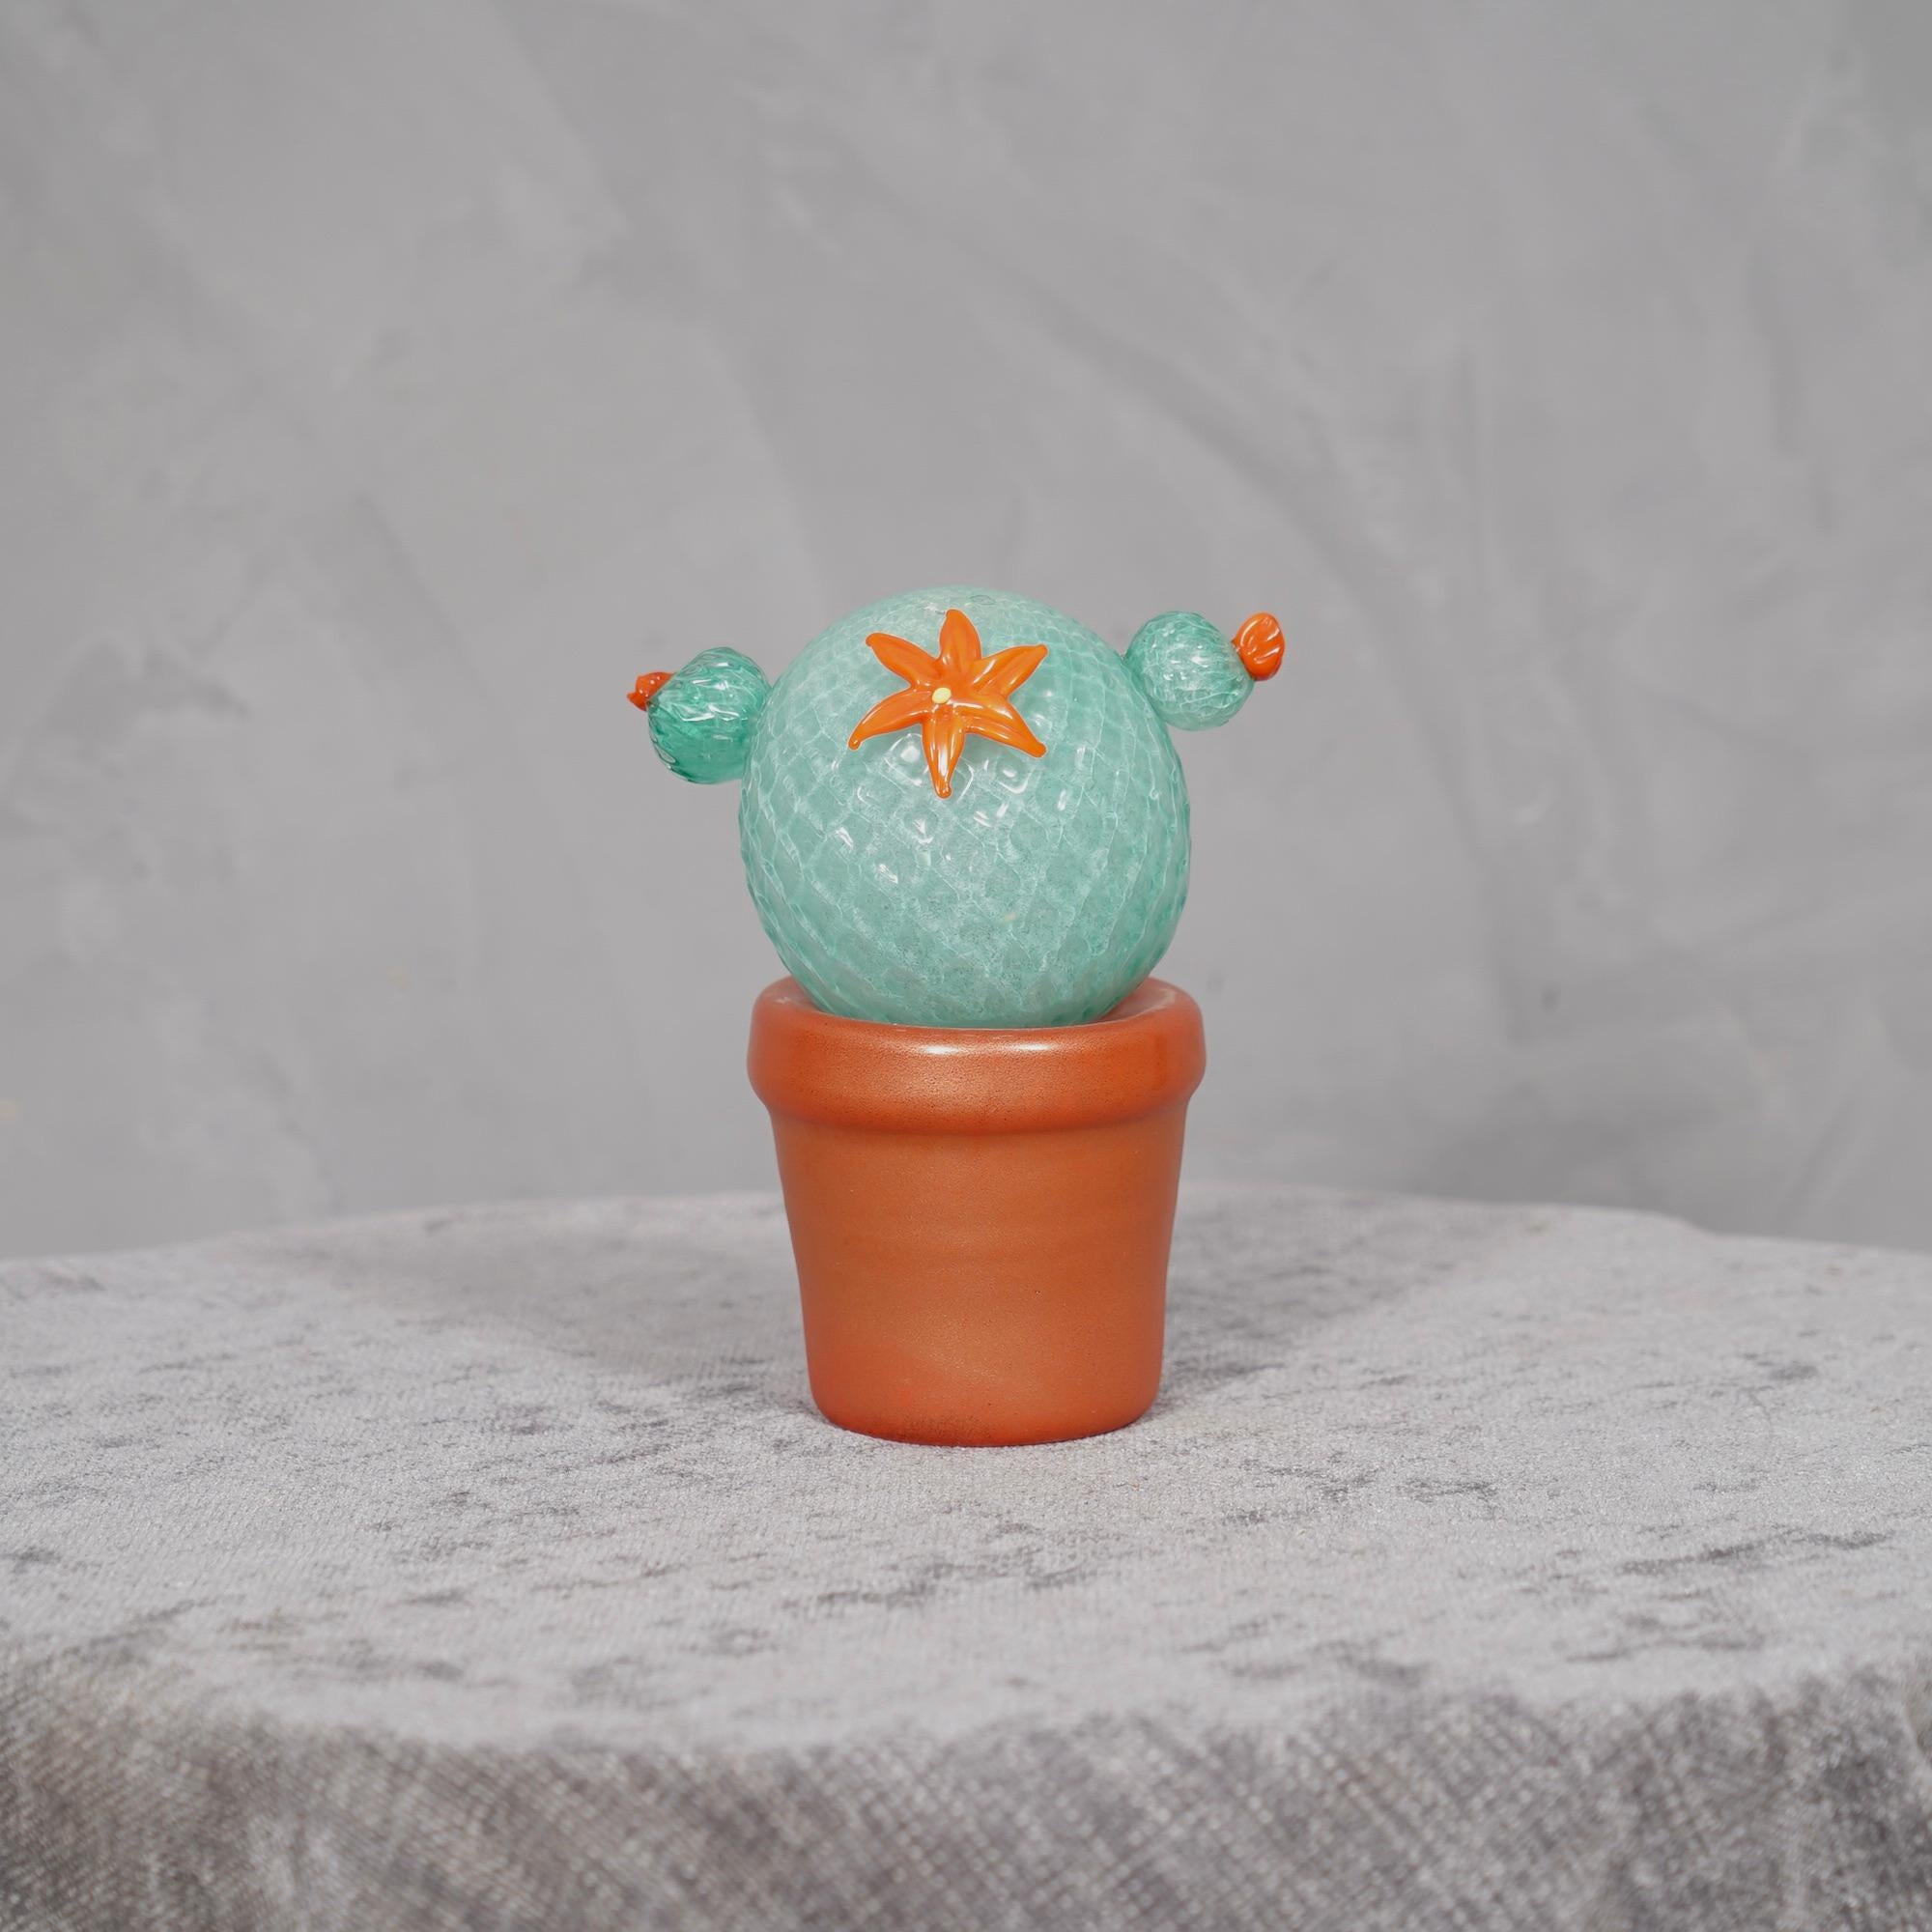 Design italien, ce cactus est une icône de la mode italienne, vert d'eau avec un beau vase en verre rouge en dessous.

En édition limitée, fabriqués dans l'un des fours de Venise, les cactus sont en verre de Murano ont un vase en verre rouge et